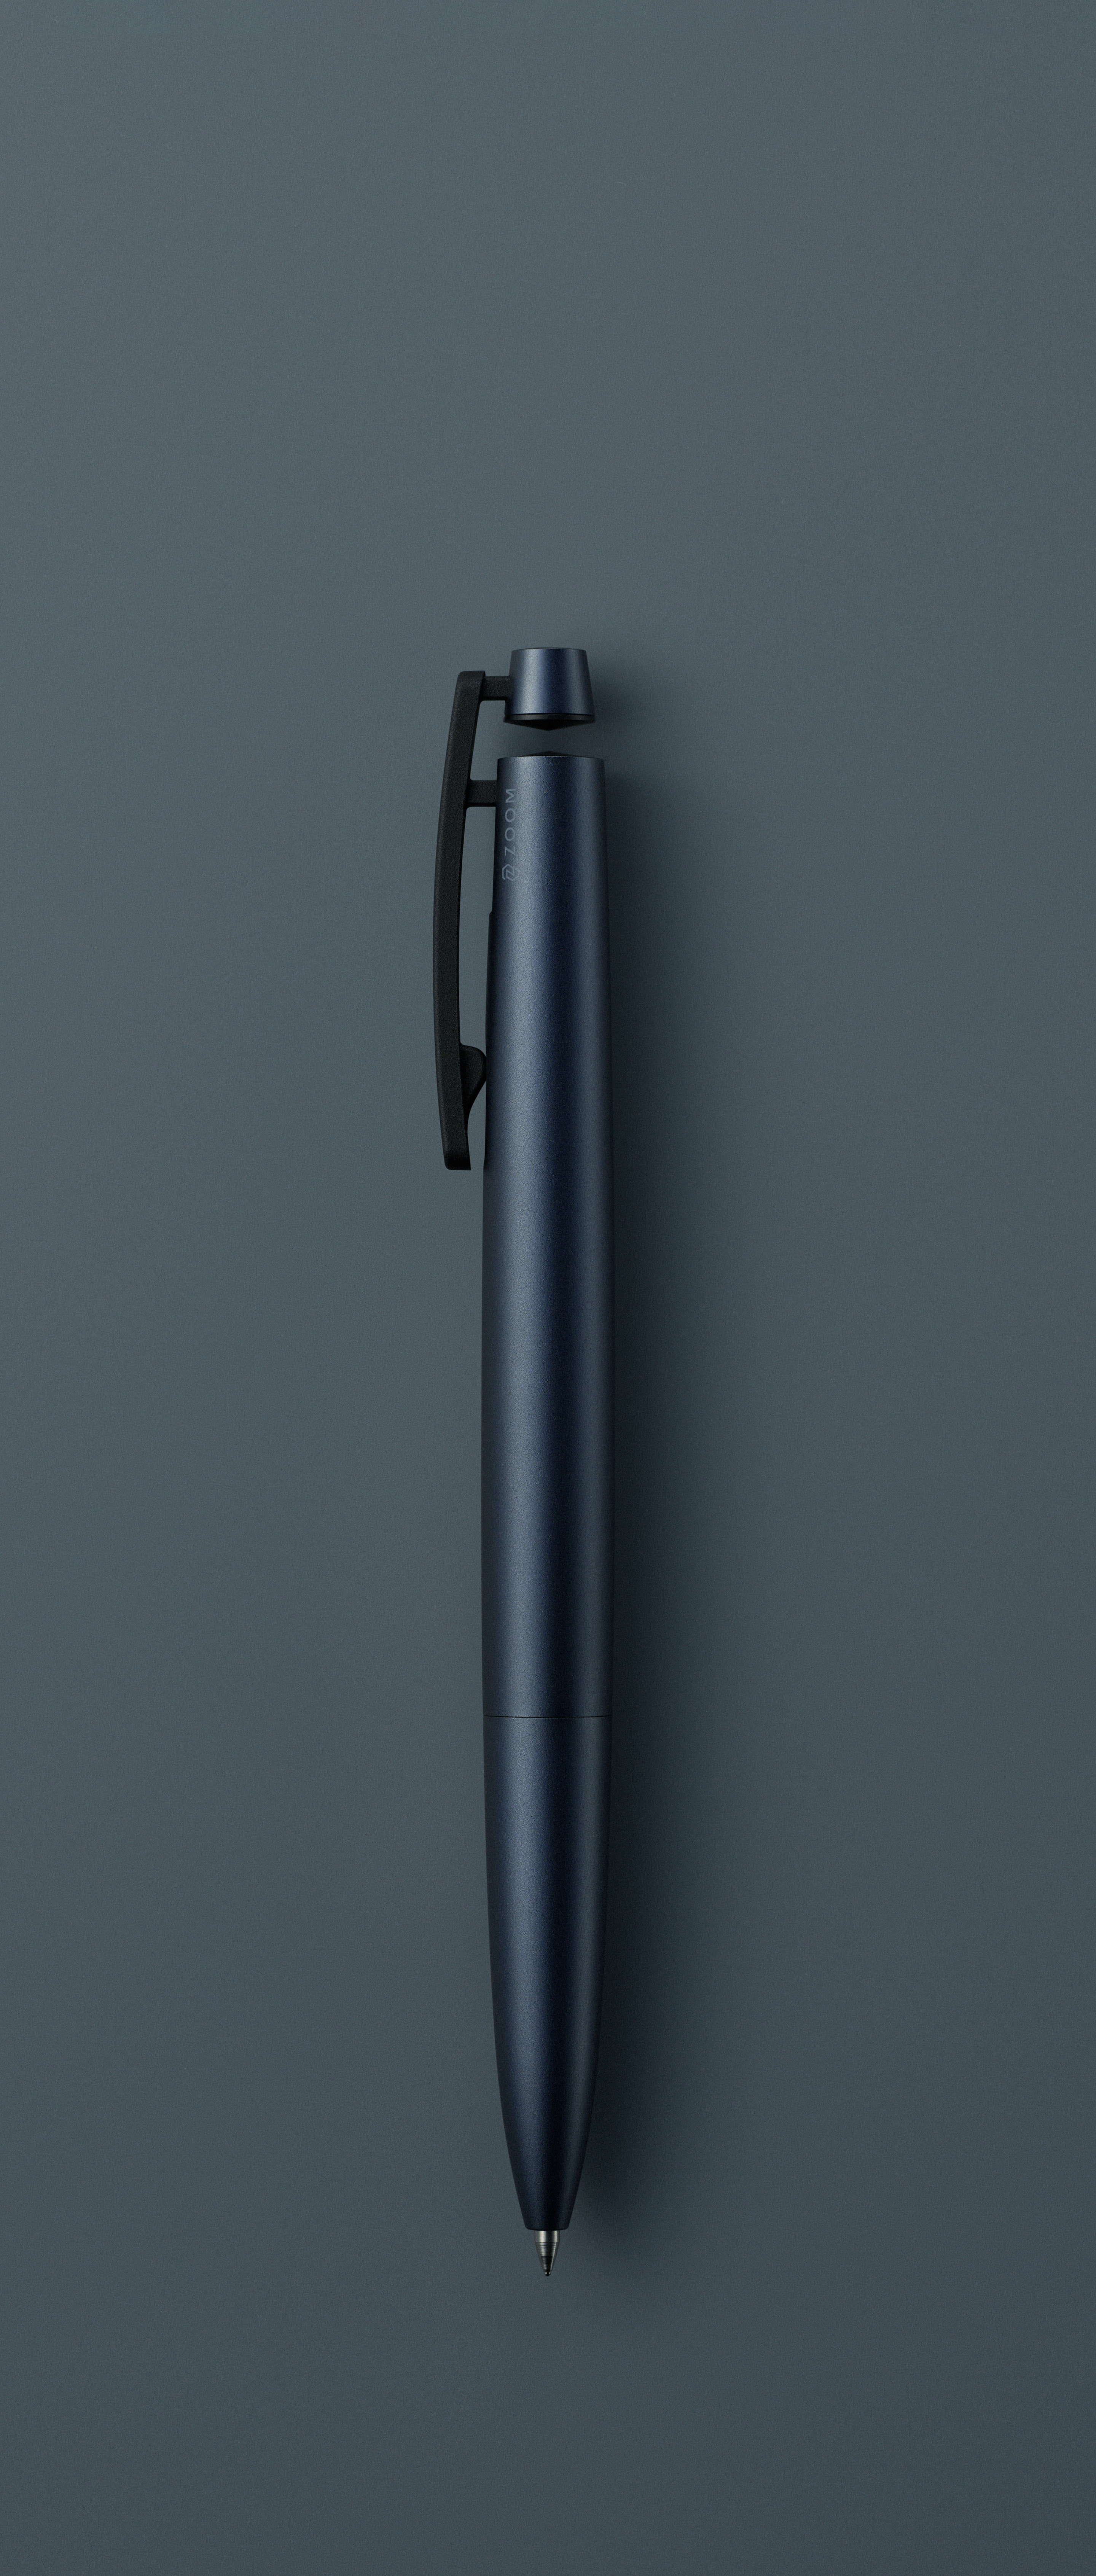 ZOOM C1 —日本発のコンテンポラリーデザインペン